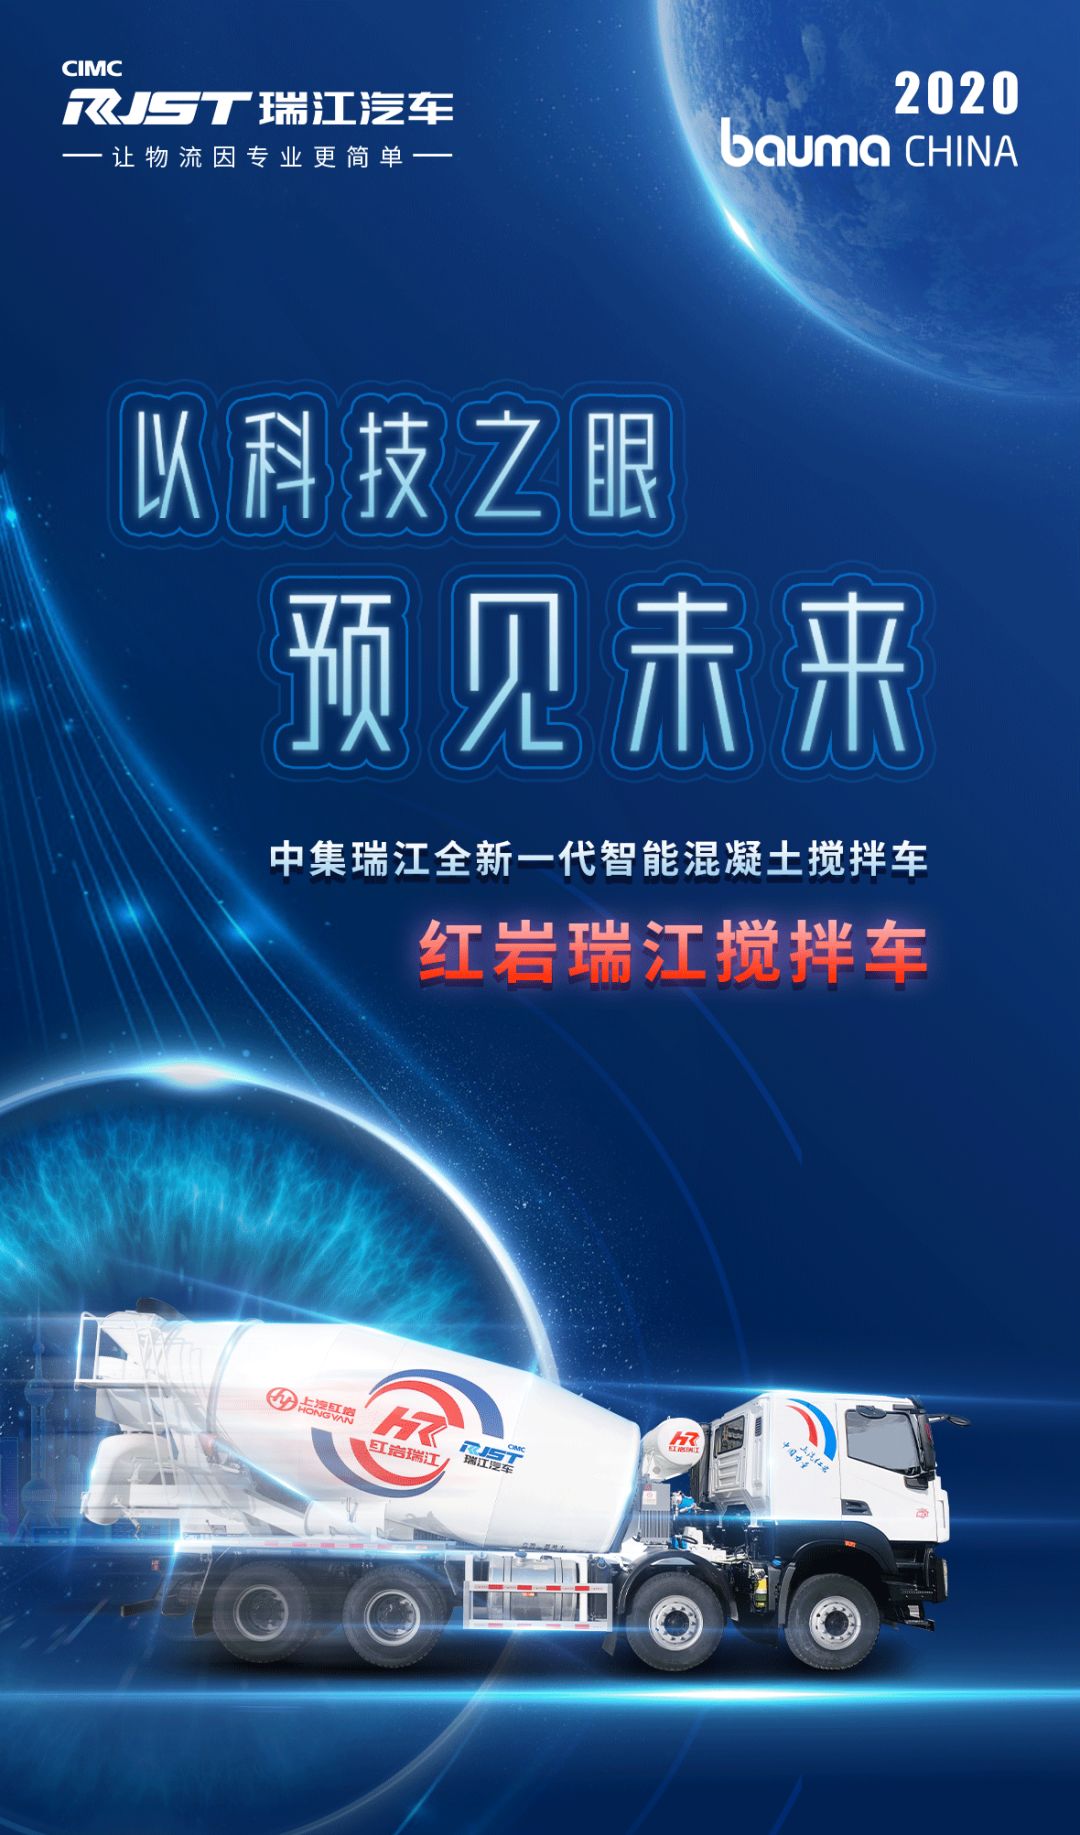 展前剧透 | 2020 bauma CHINA 一图看懂全新一代红岩瑞江智能混凝土搅拌车！